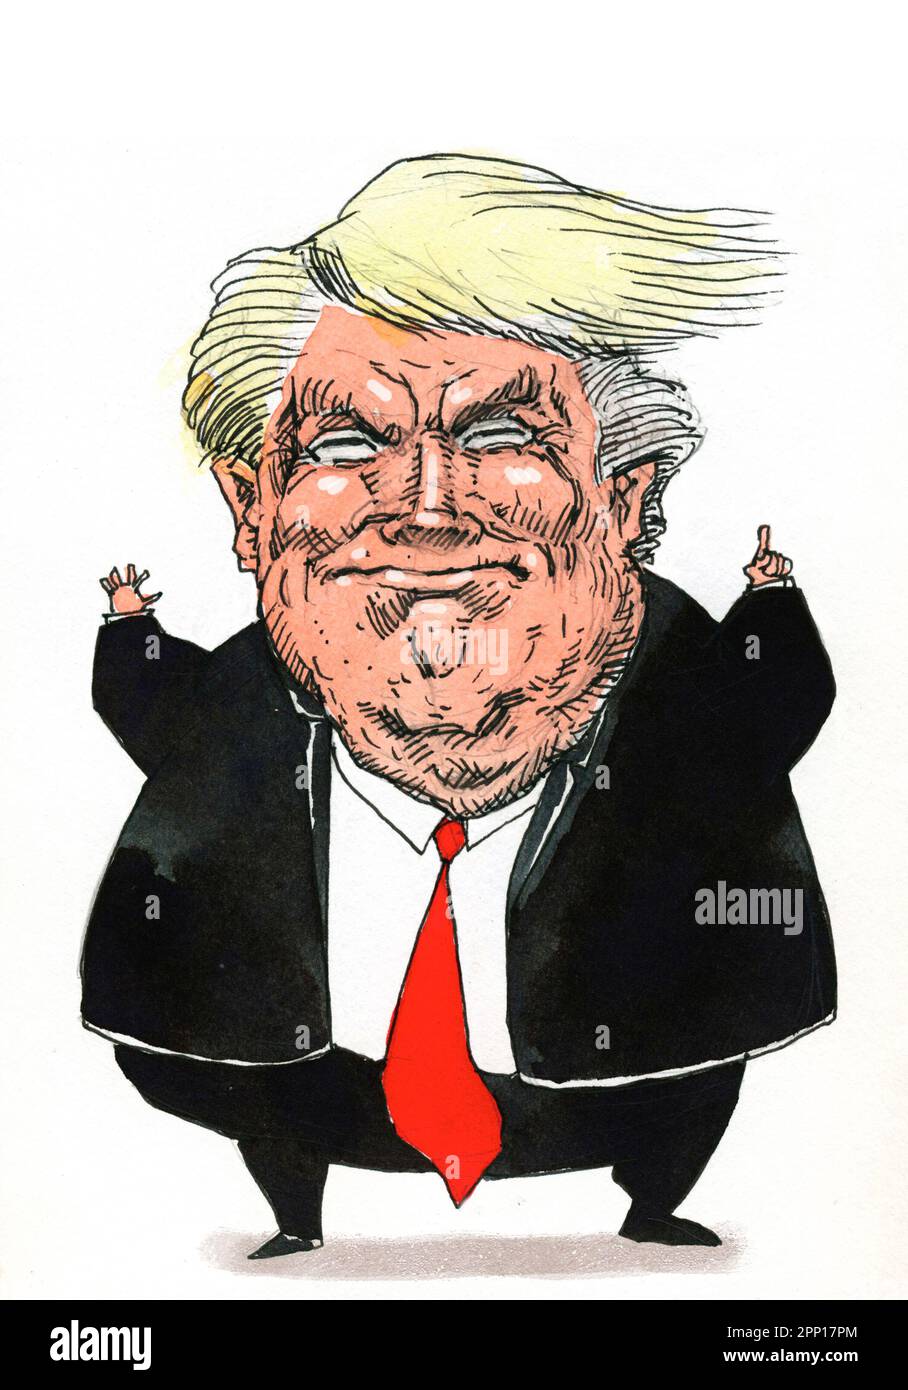 Satirische Cartoon-Kunst des amerikanischen Politikers, Medienpersönlichkeit und Geschäftsmanns Donald Trump, 45. Präsident der Vereinigten Staaten von Amerika. Stockfoto